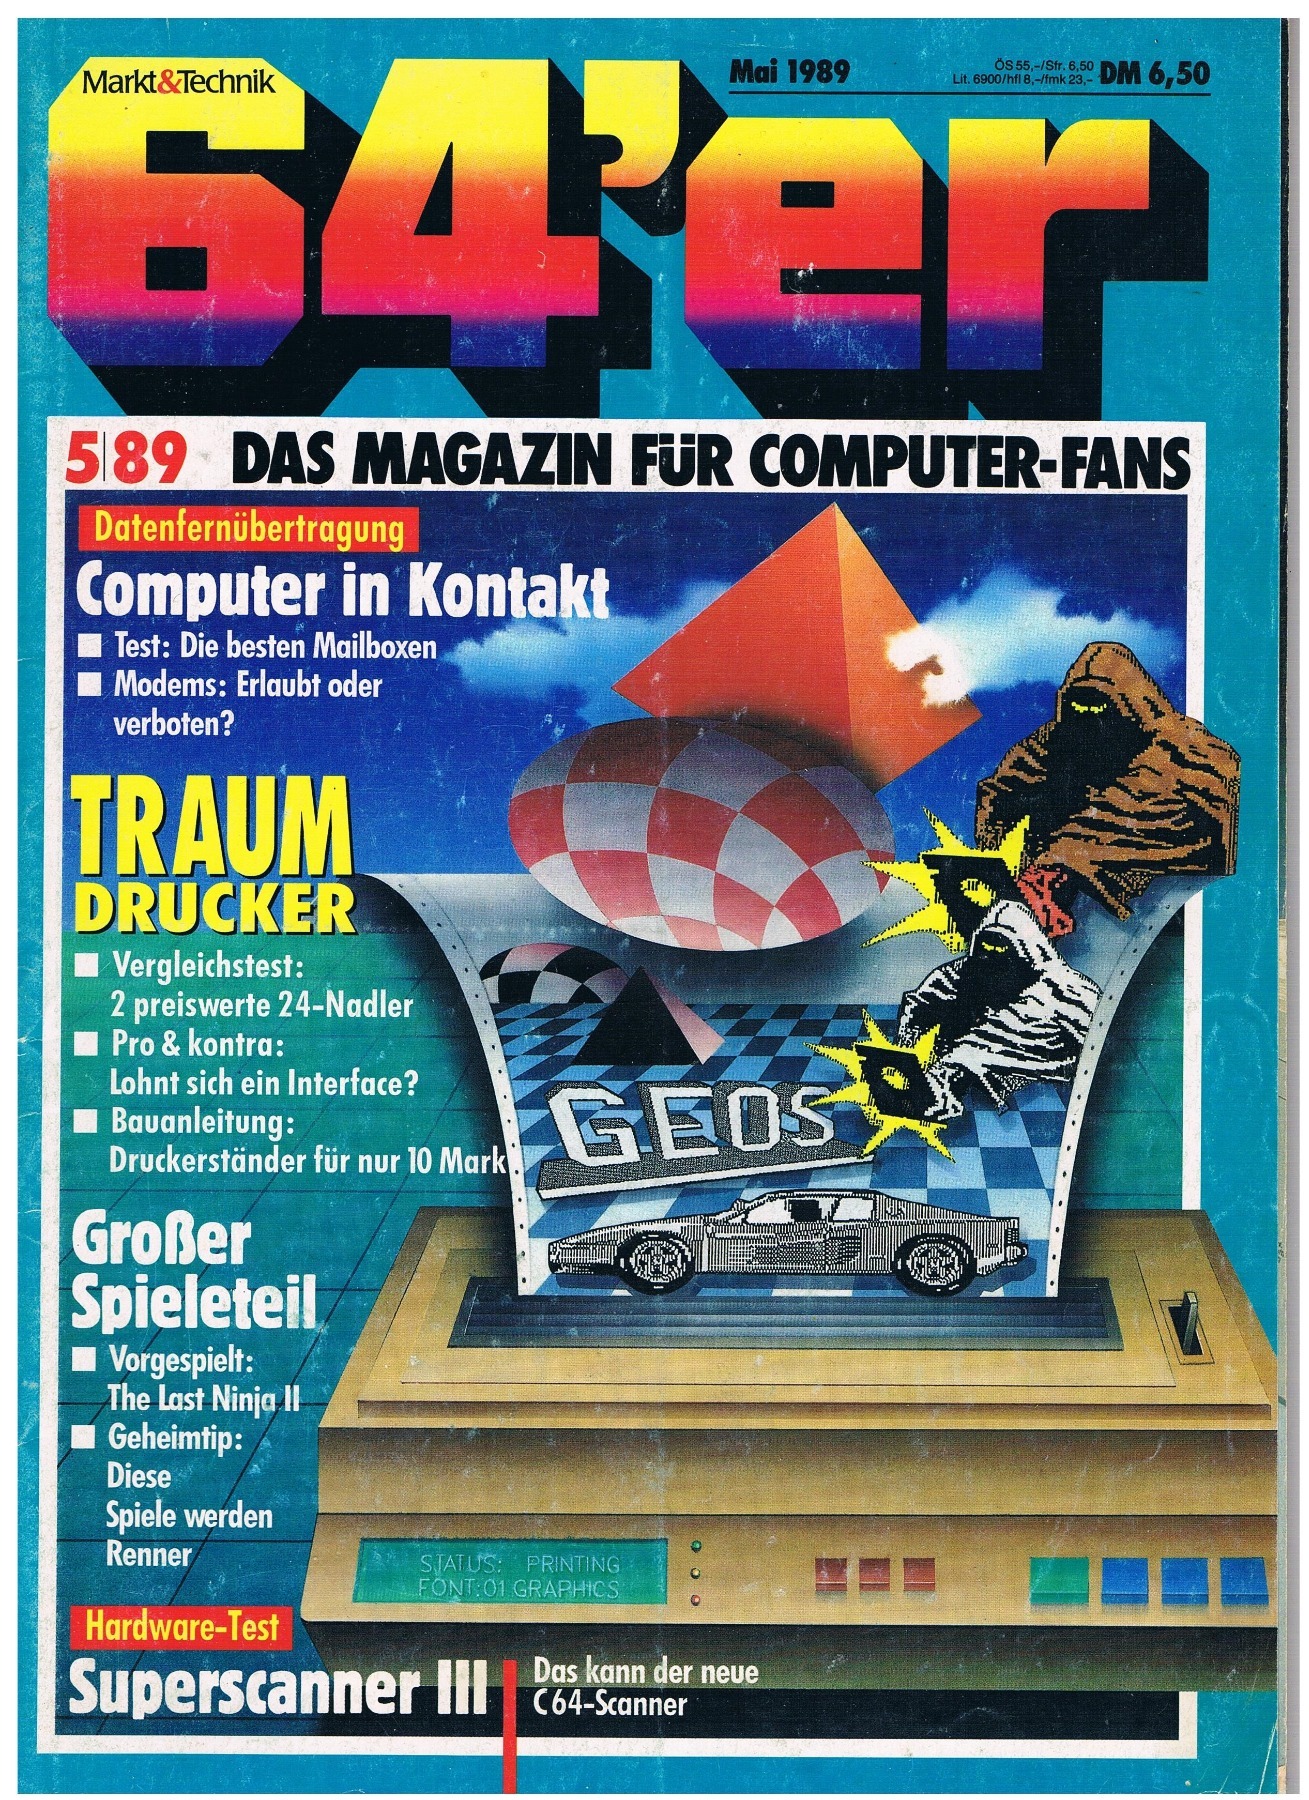 64er Magazine / booklet - issue 5/89 1989